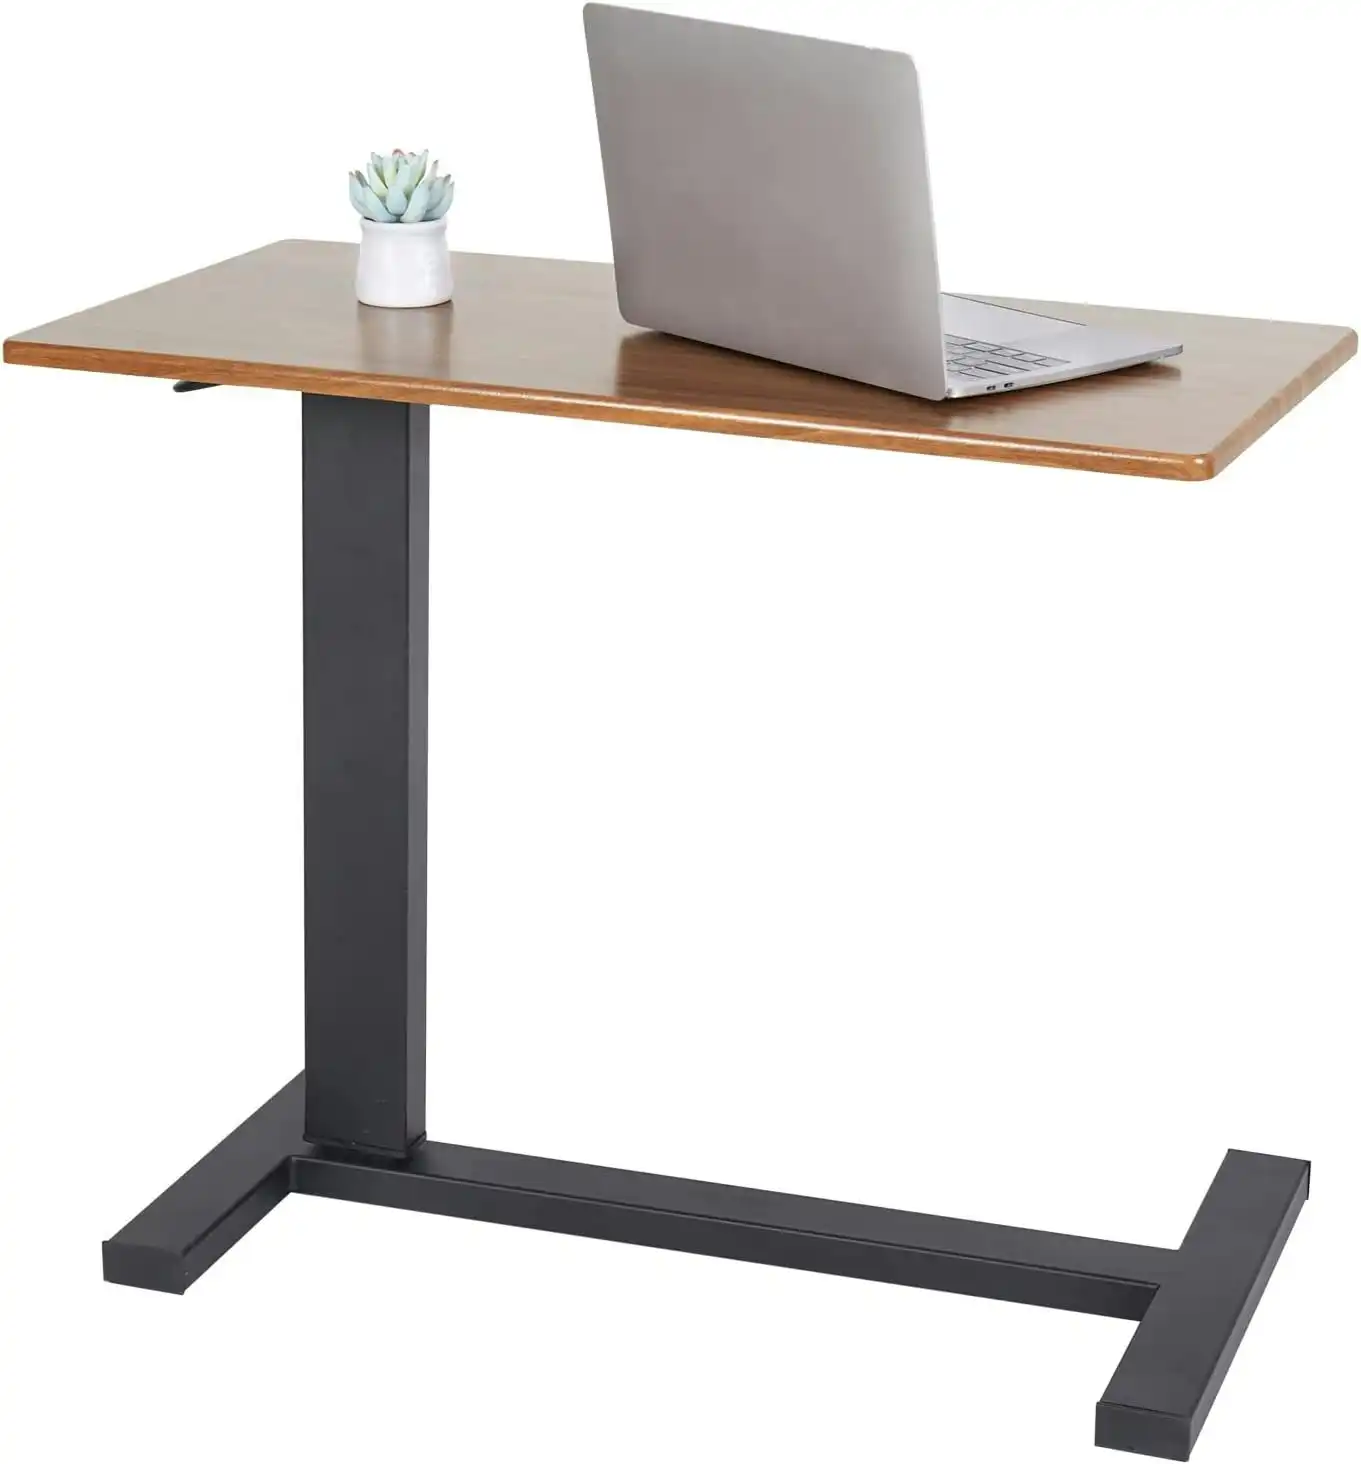 C Shape Side Table, Adjustable Height